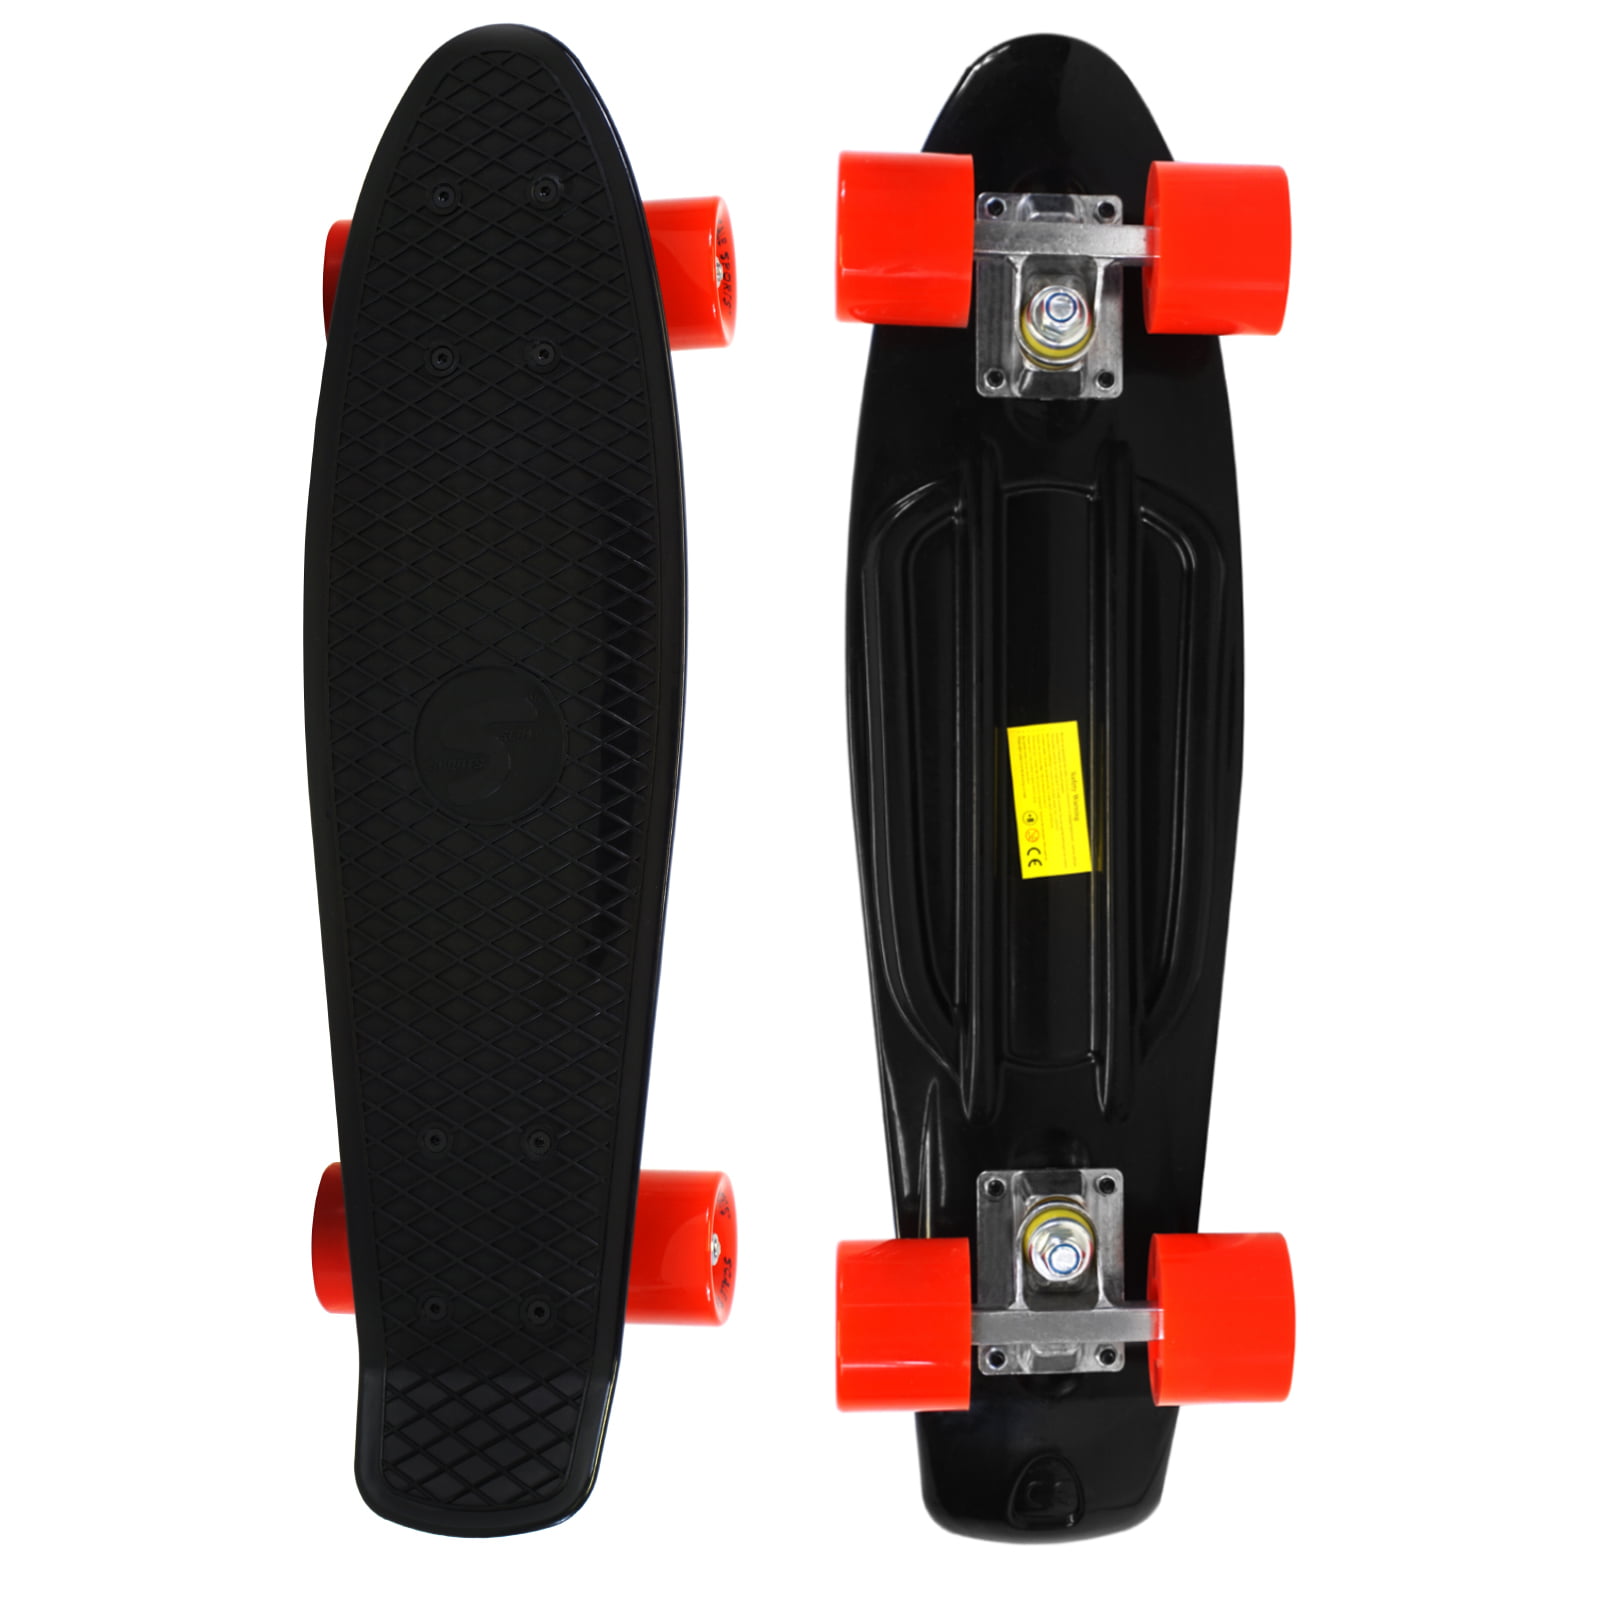 Complete 22 inch Skateboard Plastic Mini Retro Style Cruiser Black Red